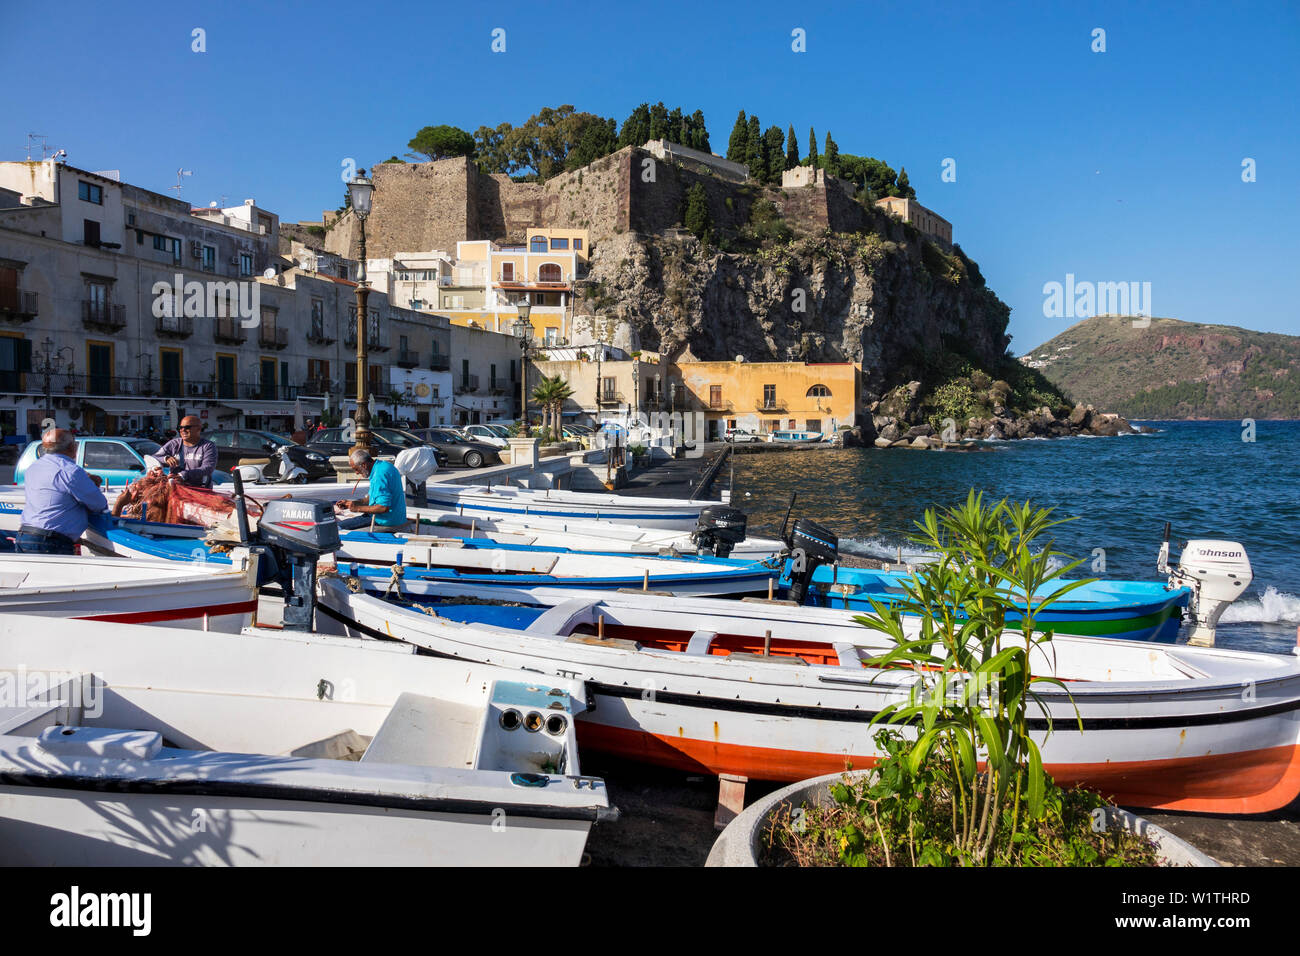 Il porto di Marina Corta, cittadina Lipari, Isola di Lipari, Isole Eolie,  isole Lipari, Mar Tirreno, il Mar Mediterraneo, l'Italia, Europa Foto stock  - Alamy